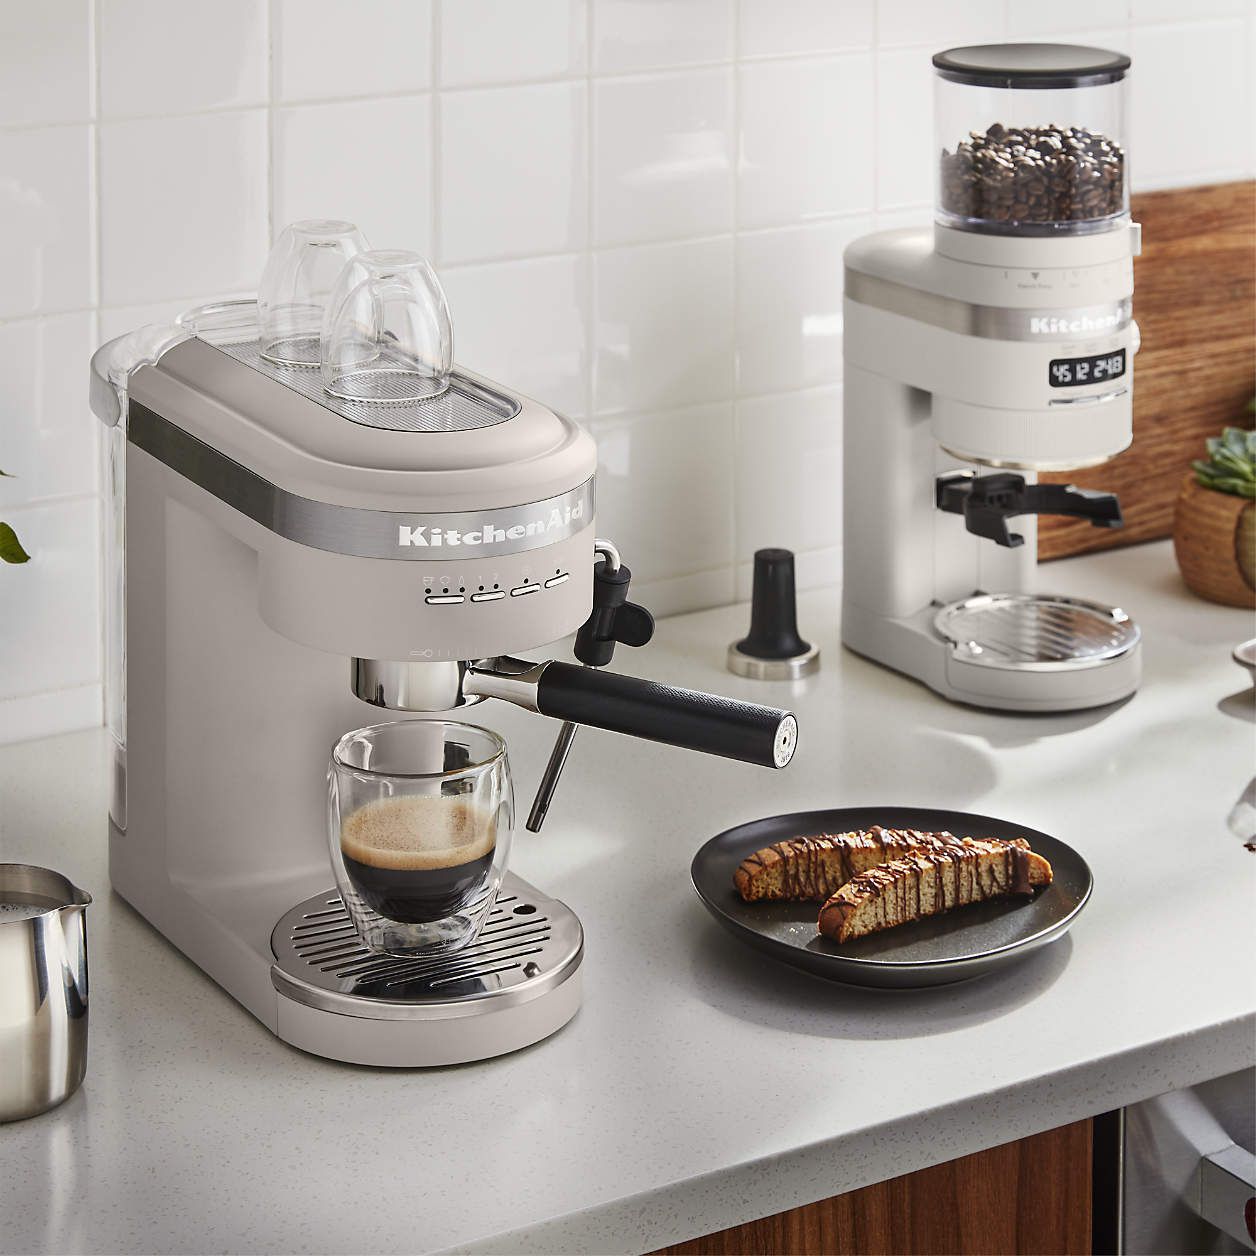 KitchenAid semi-automatic espresso machine